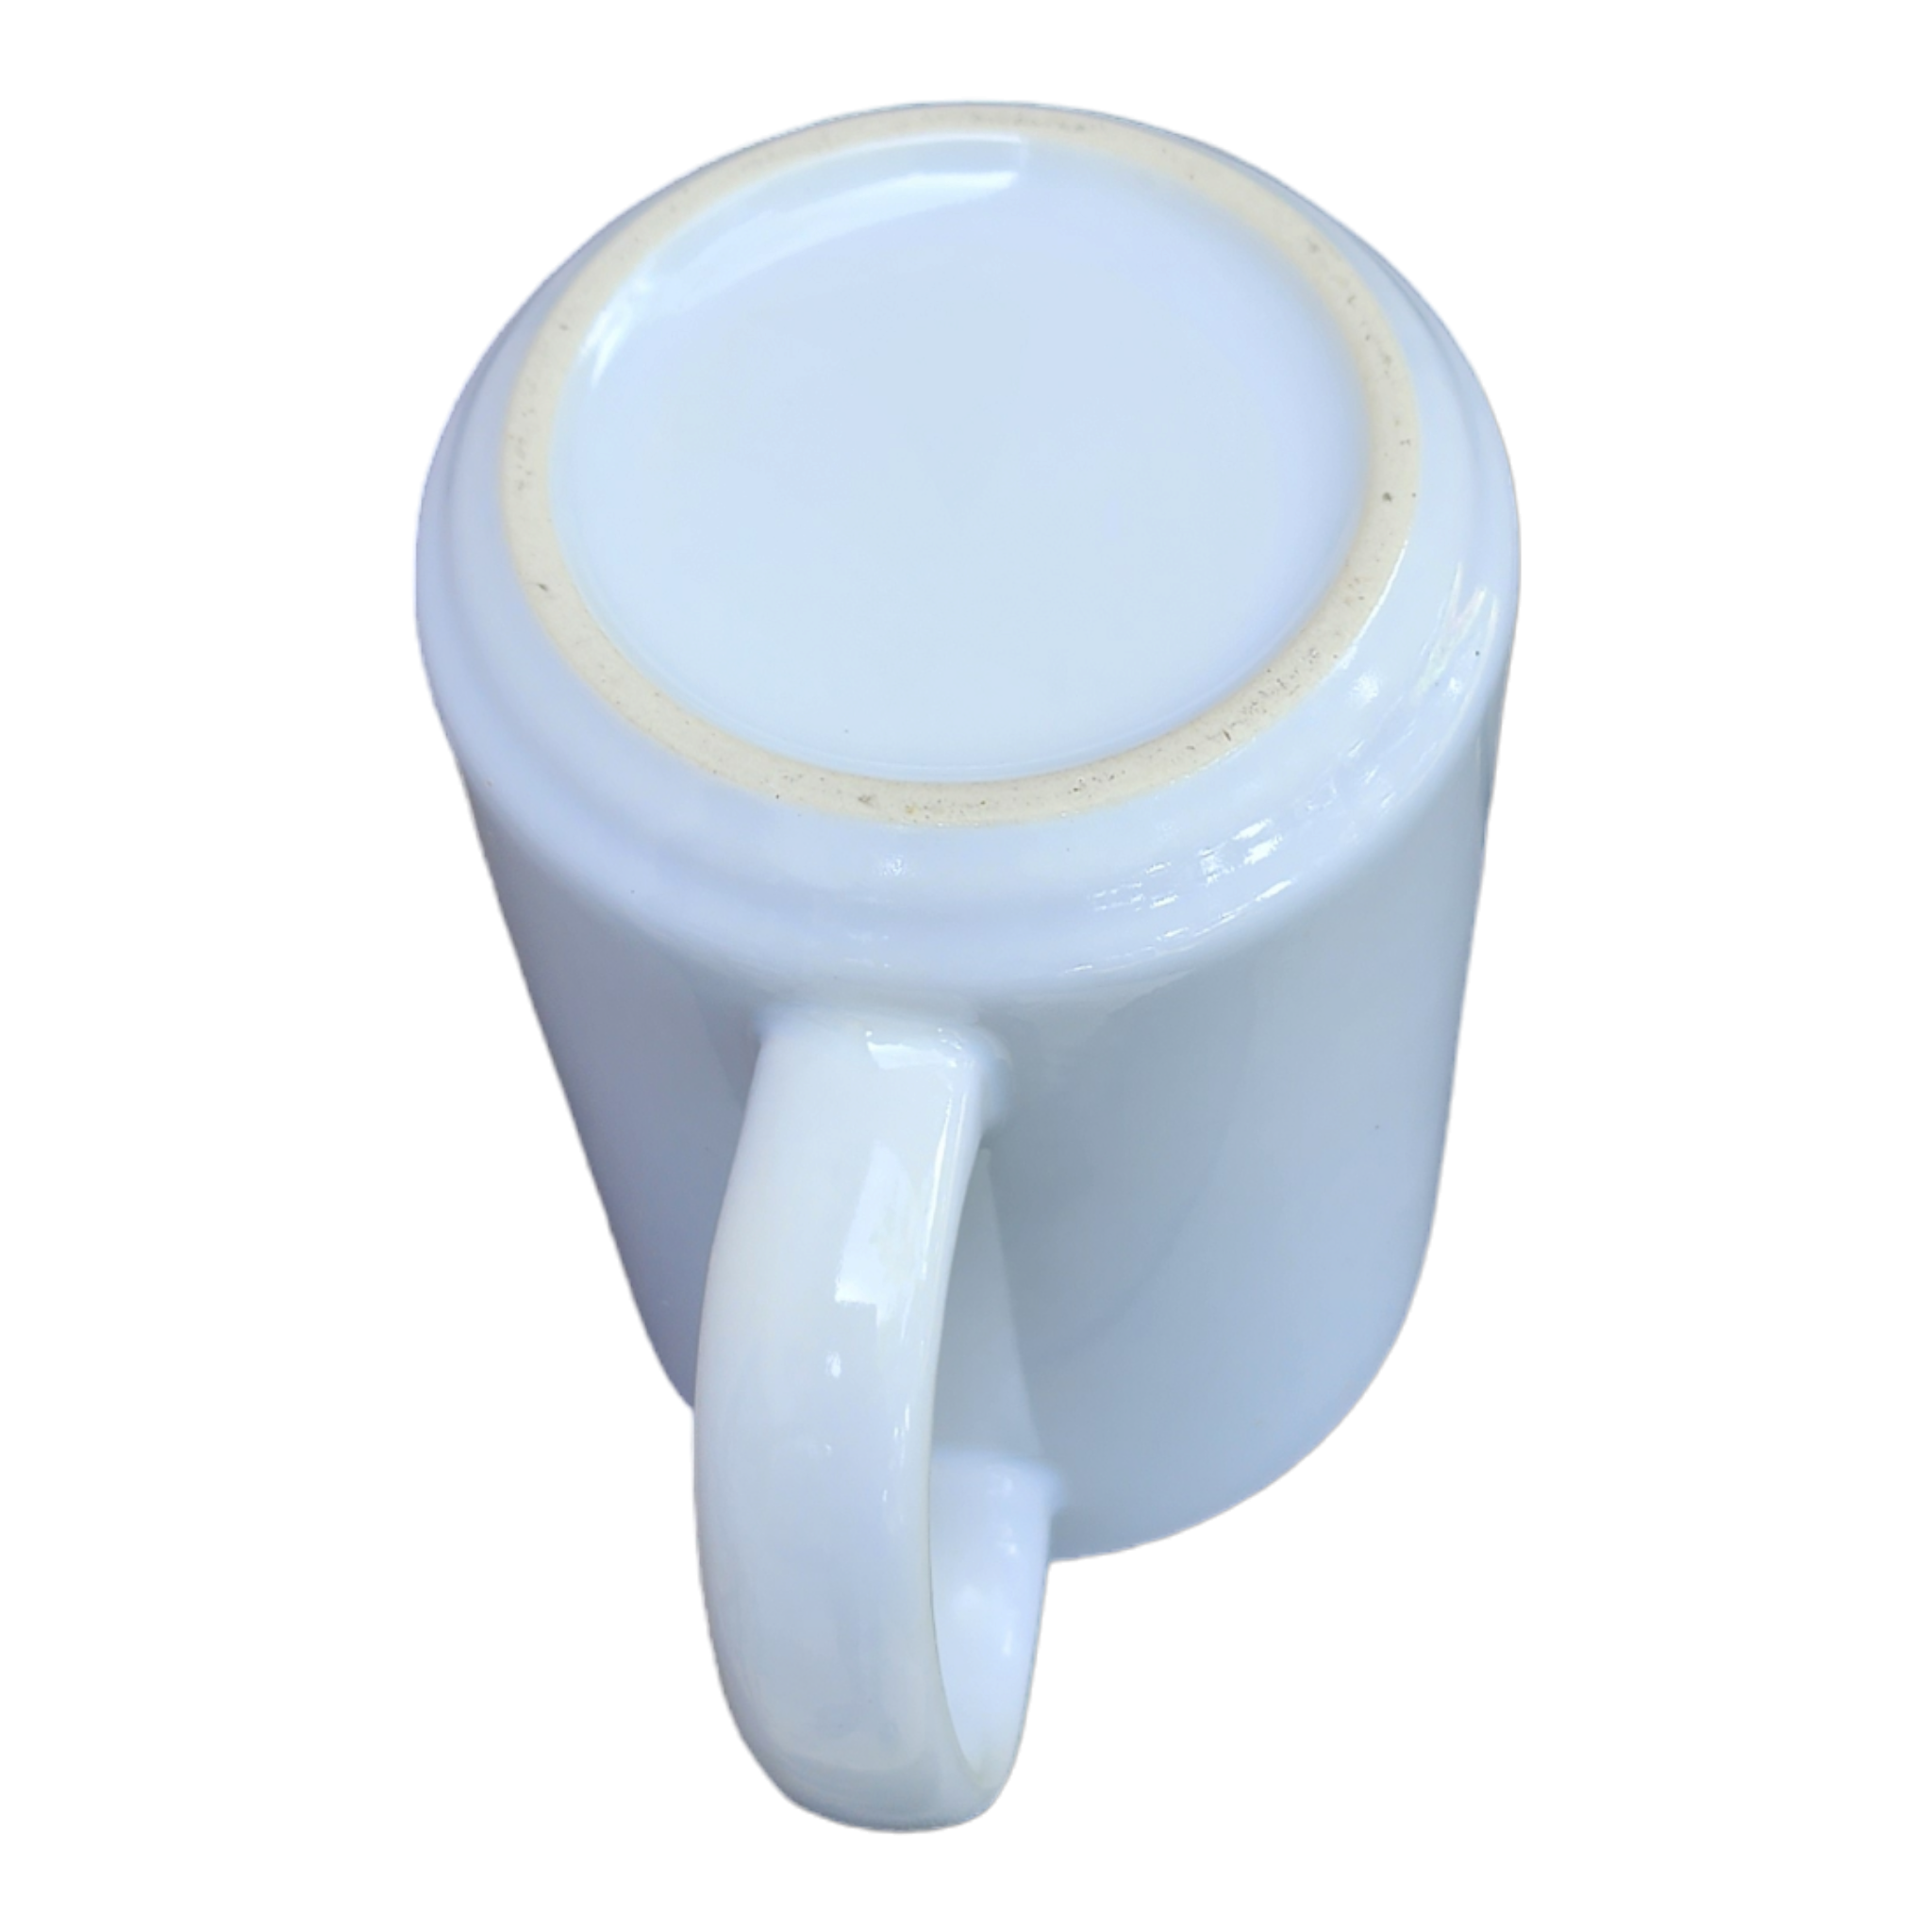 Ceramic Sublimation Mugs 2 pk 15oz - White